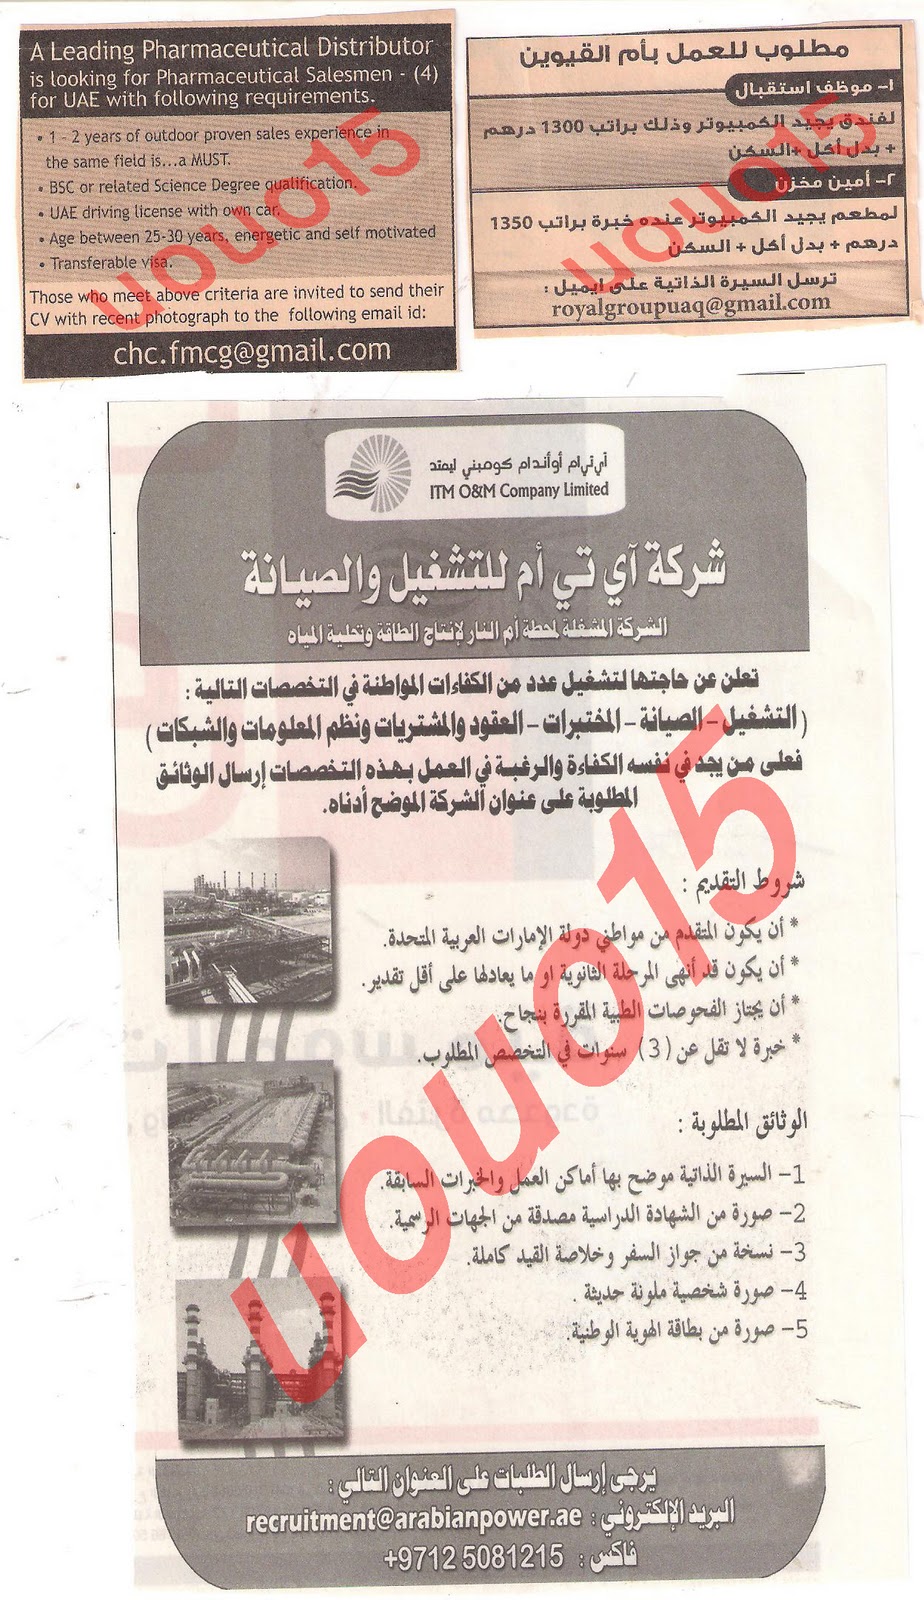 وظائف شاغرة من جريدة الخليج الجمعة 9\12\2011  Picture+030